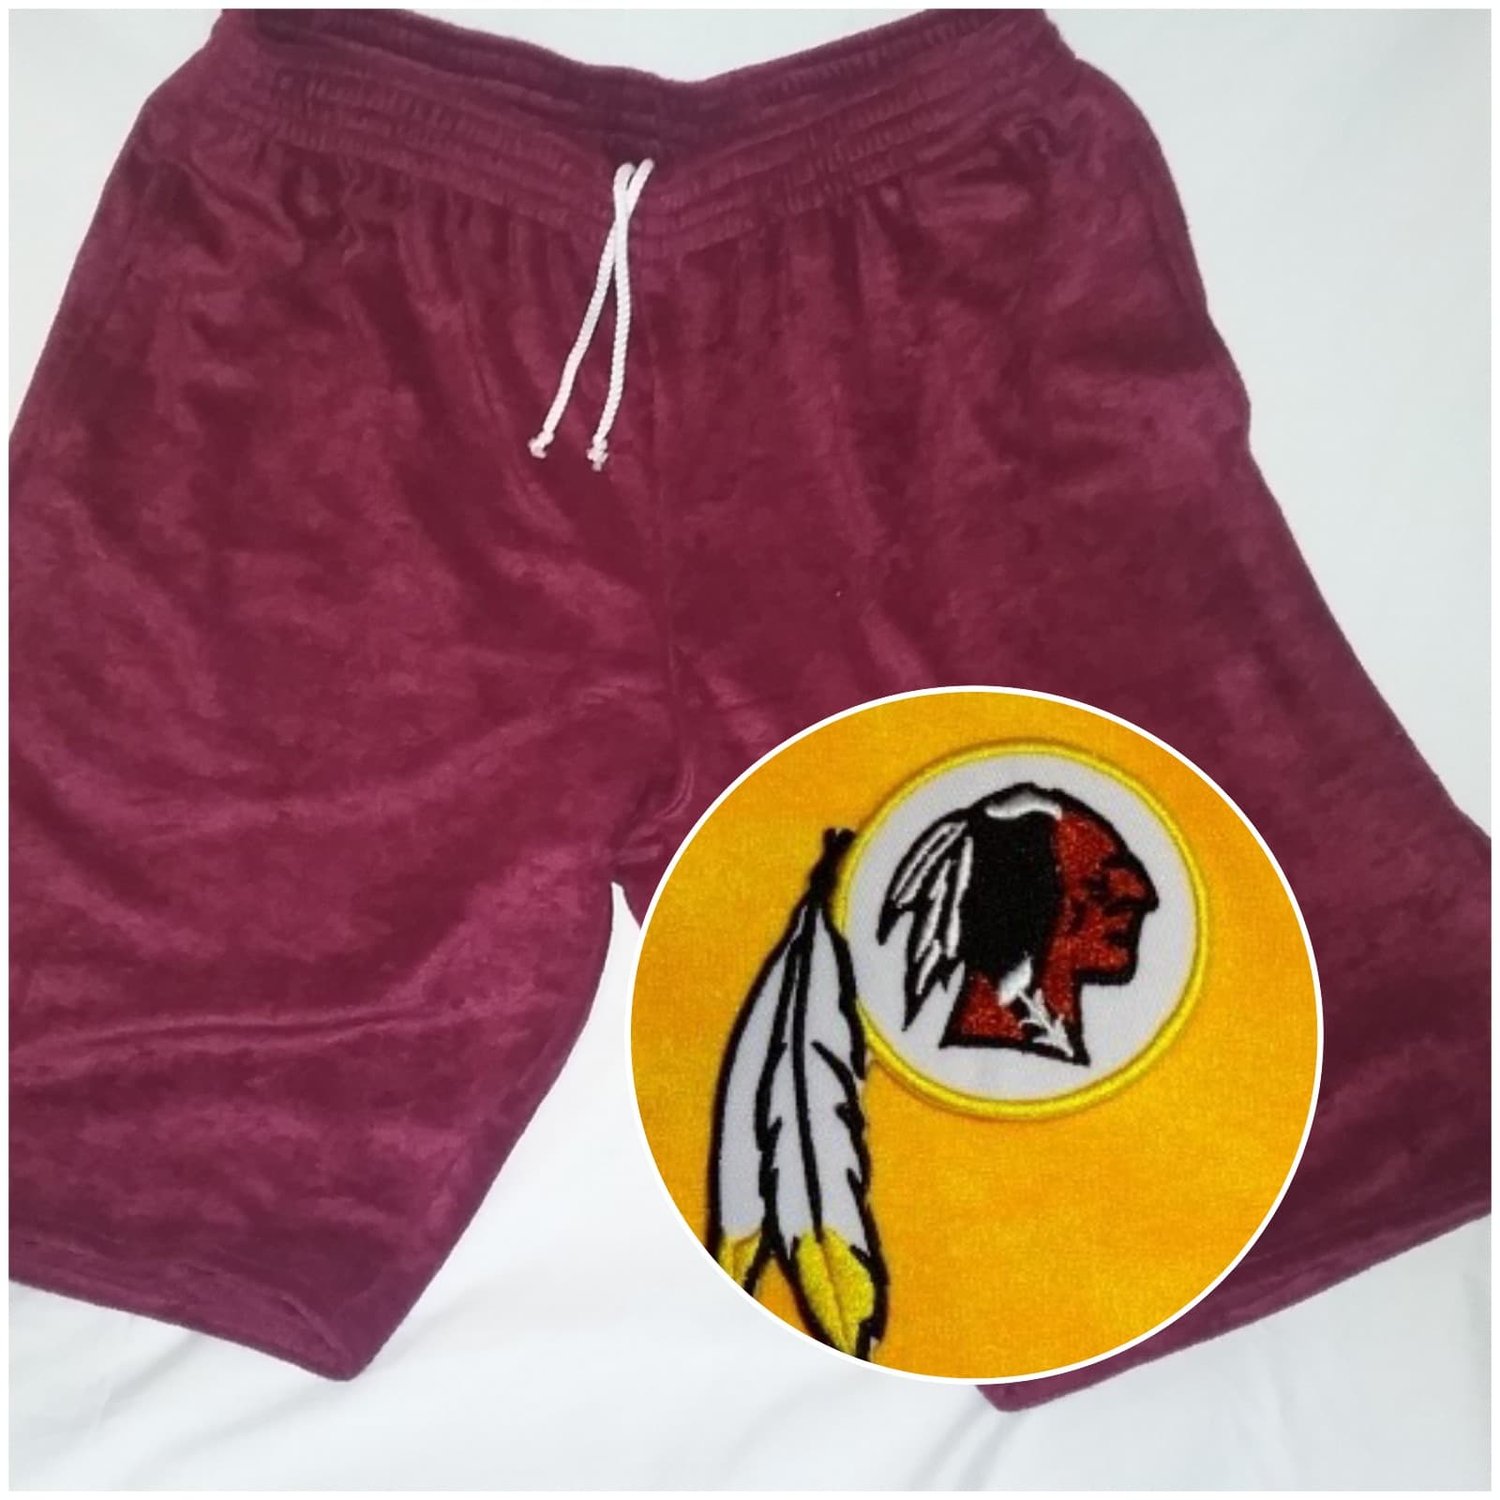 Image of Washington Redskins Themed Towel Shorts